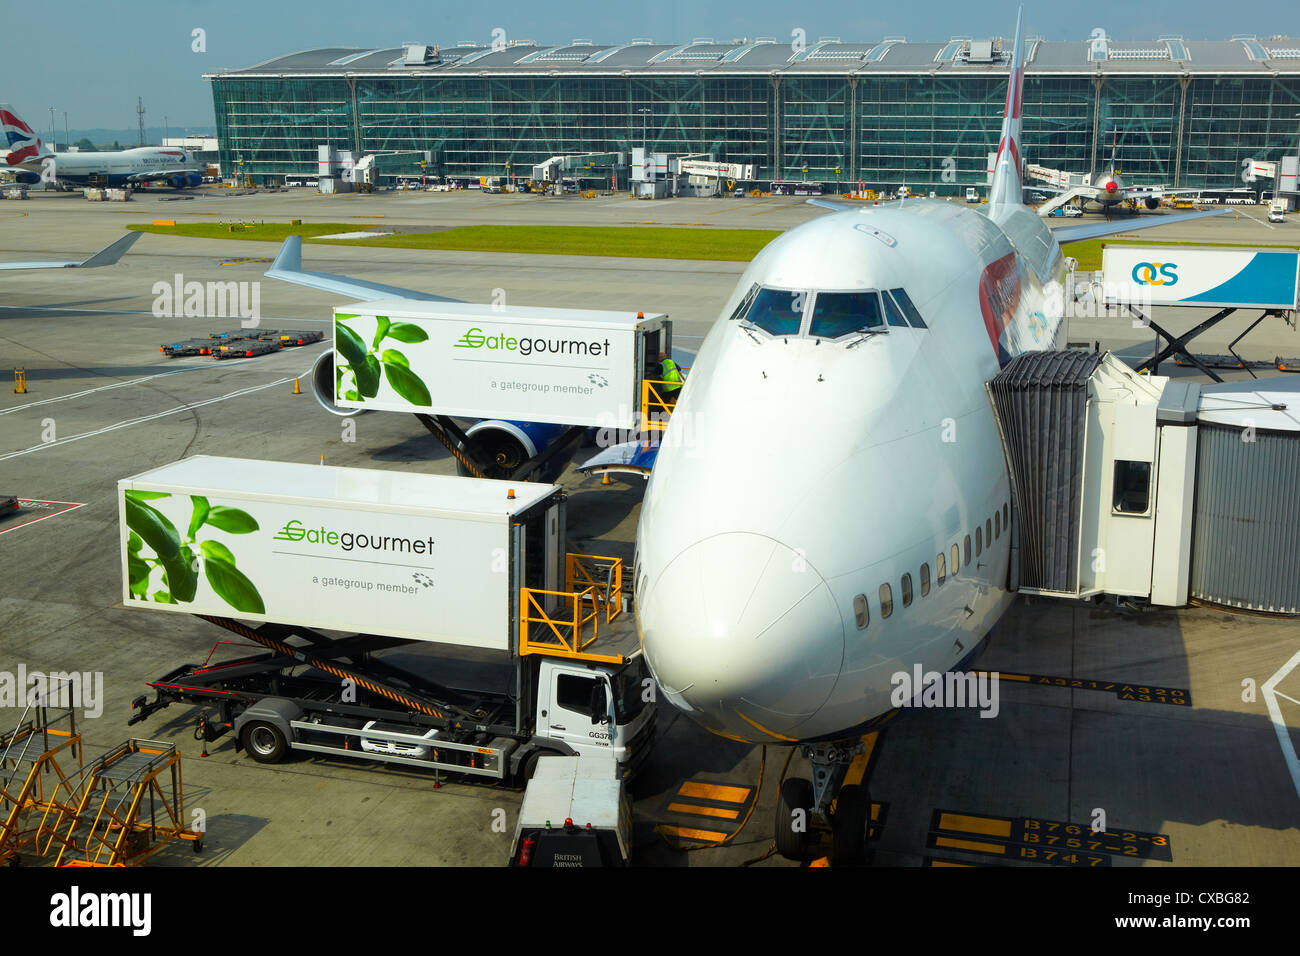 Piano in corrispondenza di un cancello, l'aeroporto di Heathrow, REGNO UNITO Foto Stock